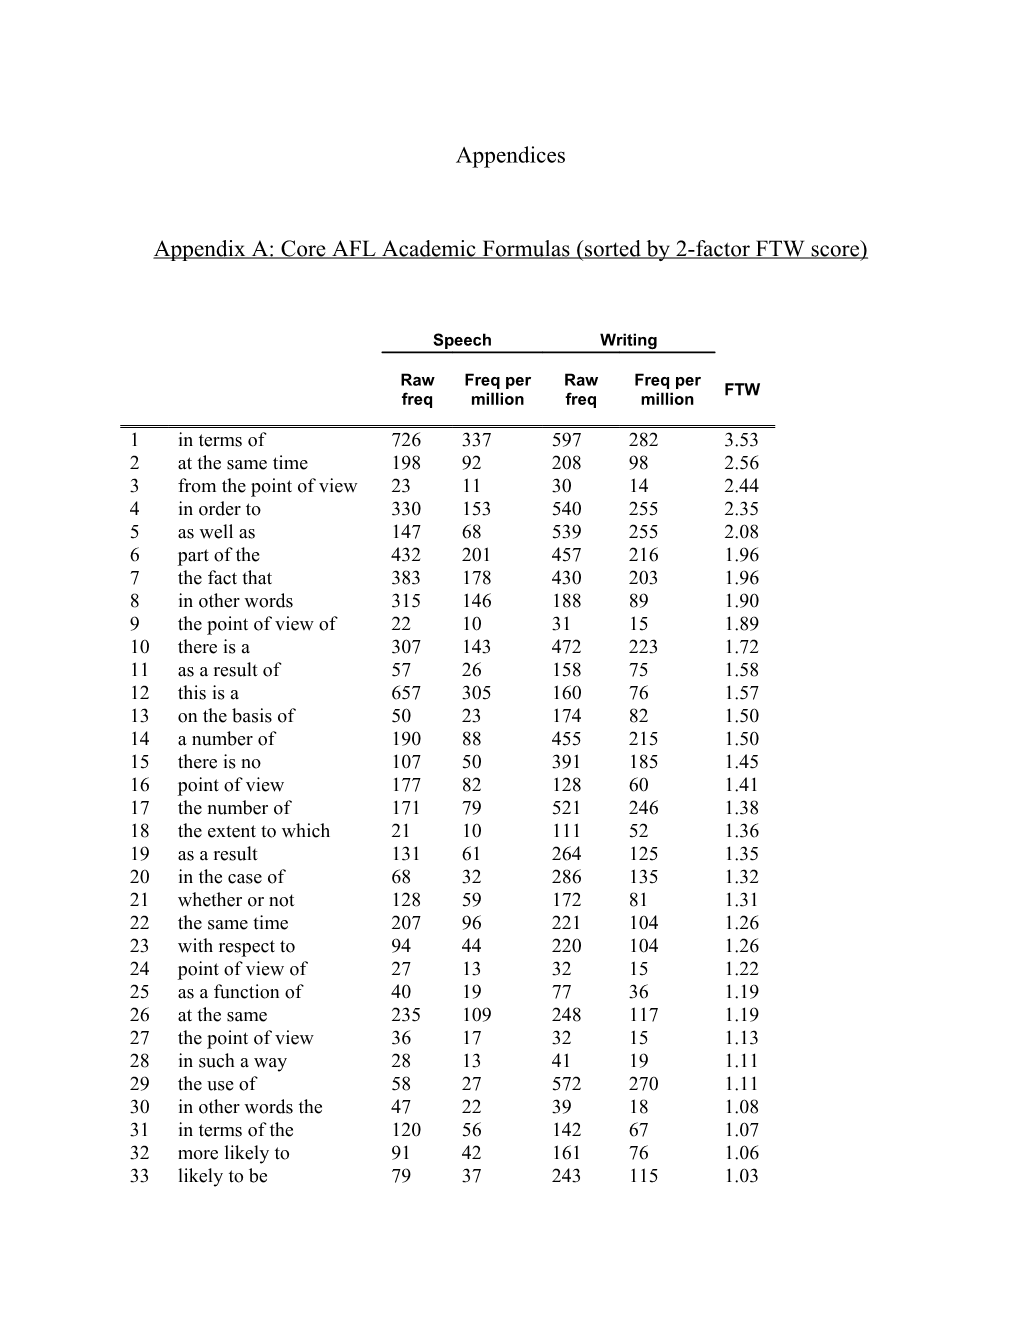 Appendix A: Core AFL Academic Formulas (Sorted by 2-Factor FTW Score)